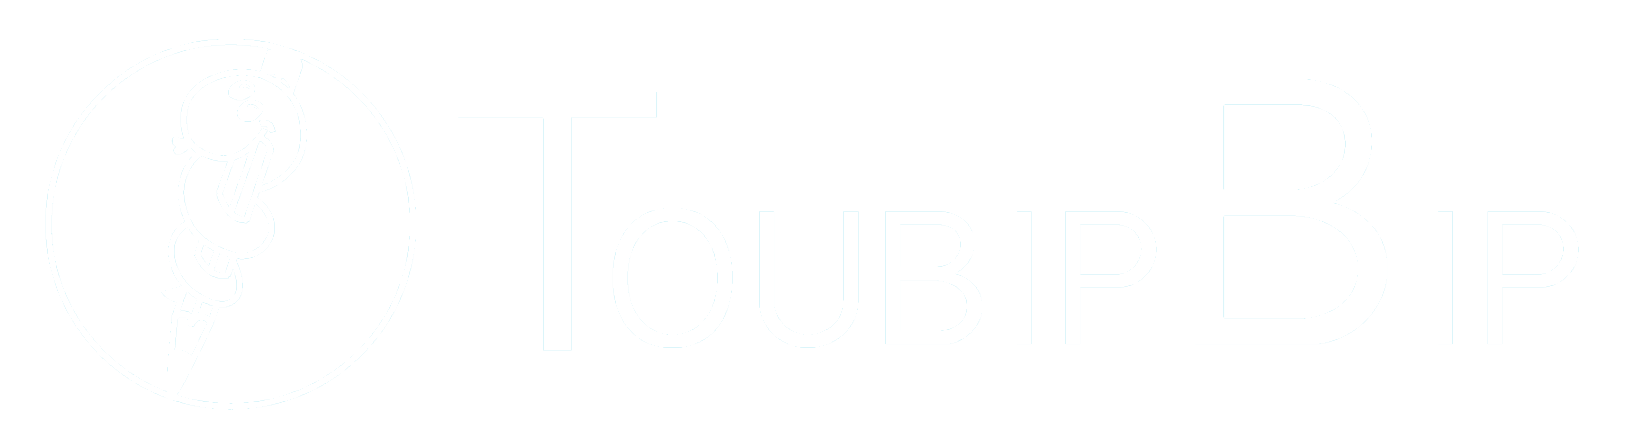 Toubipbip